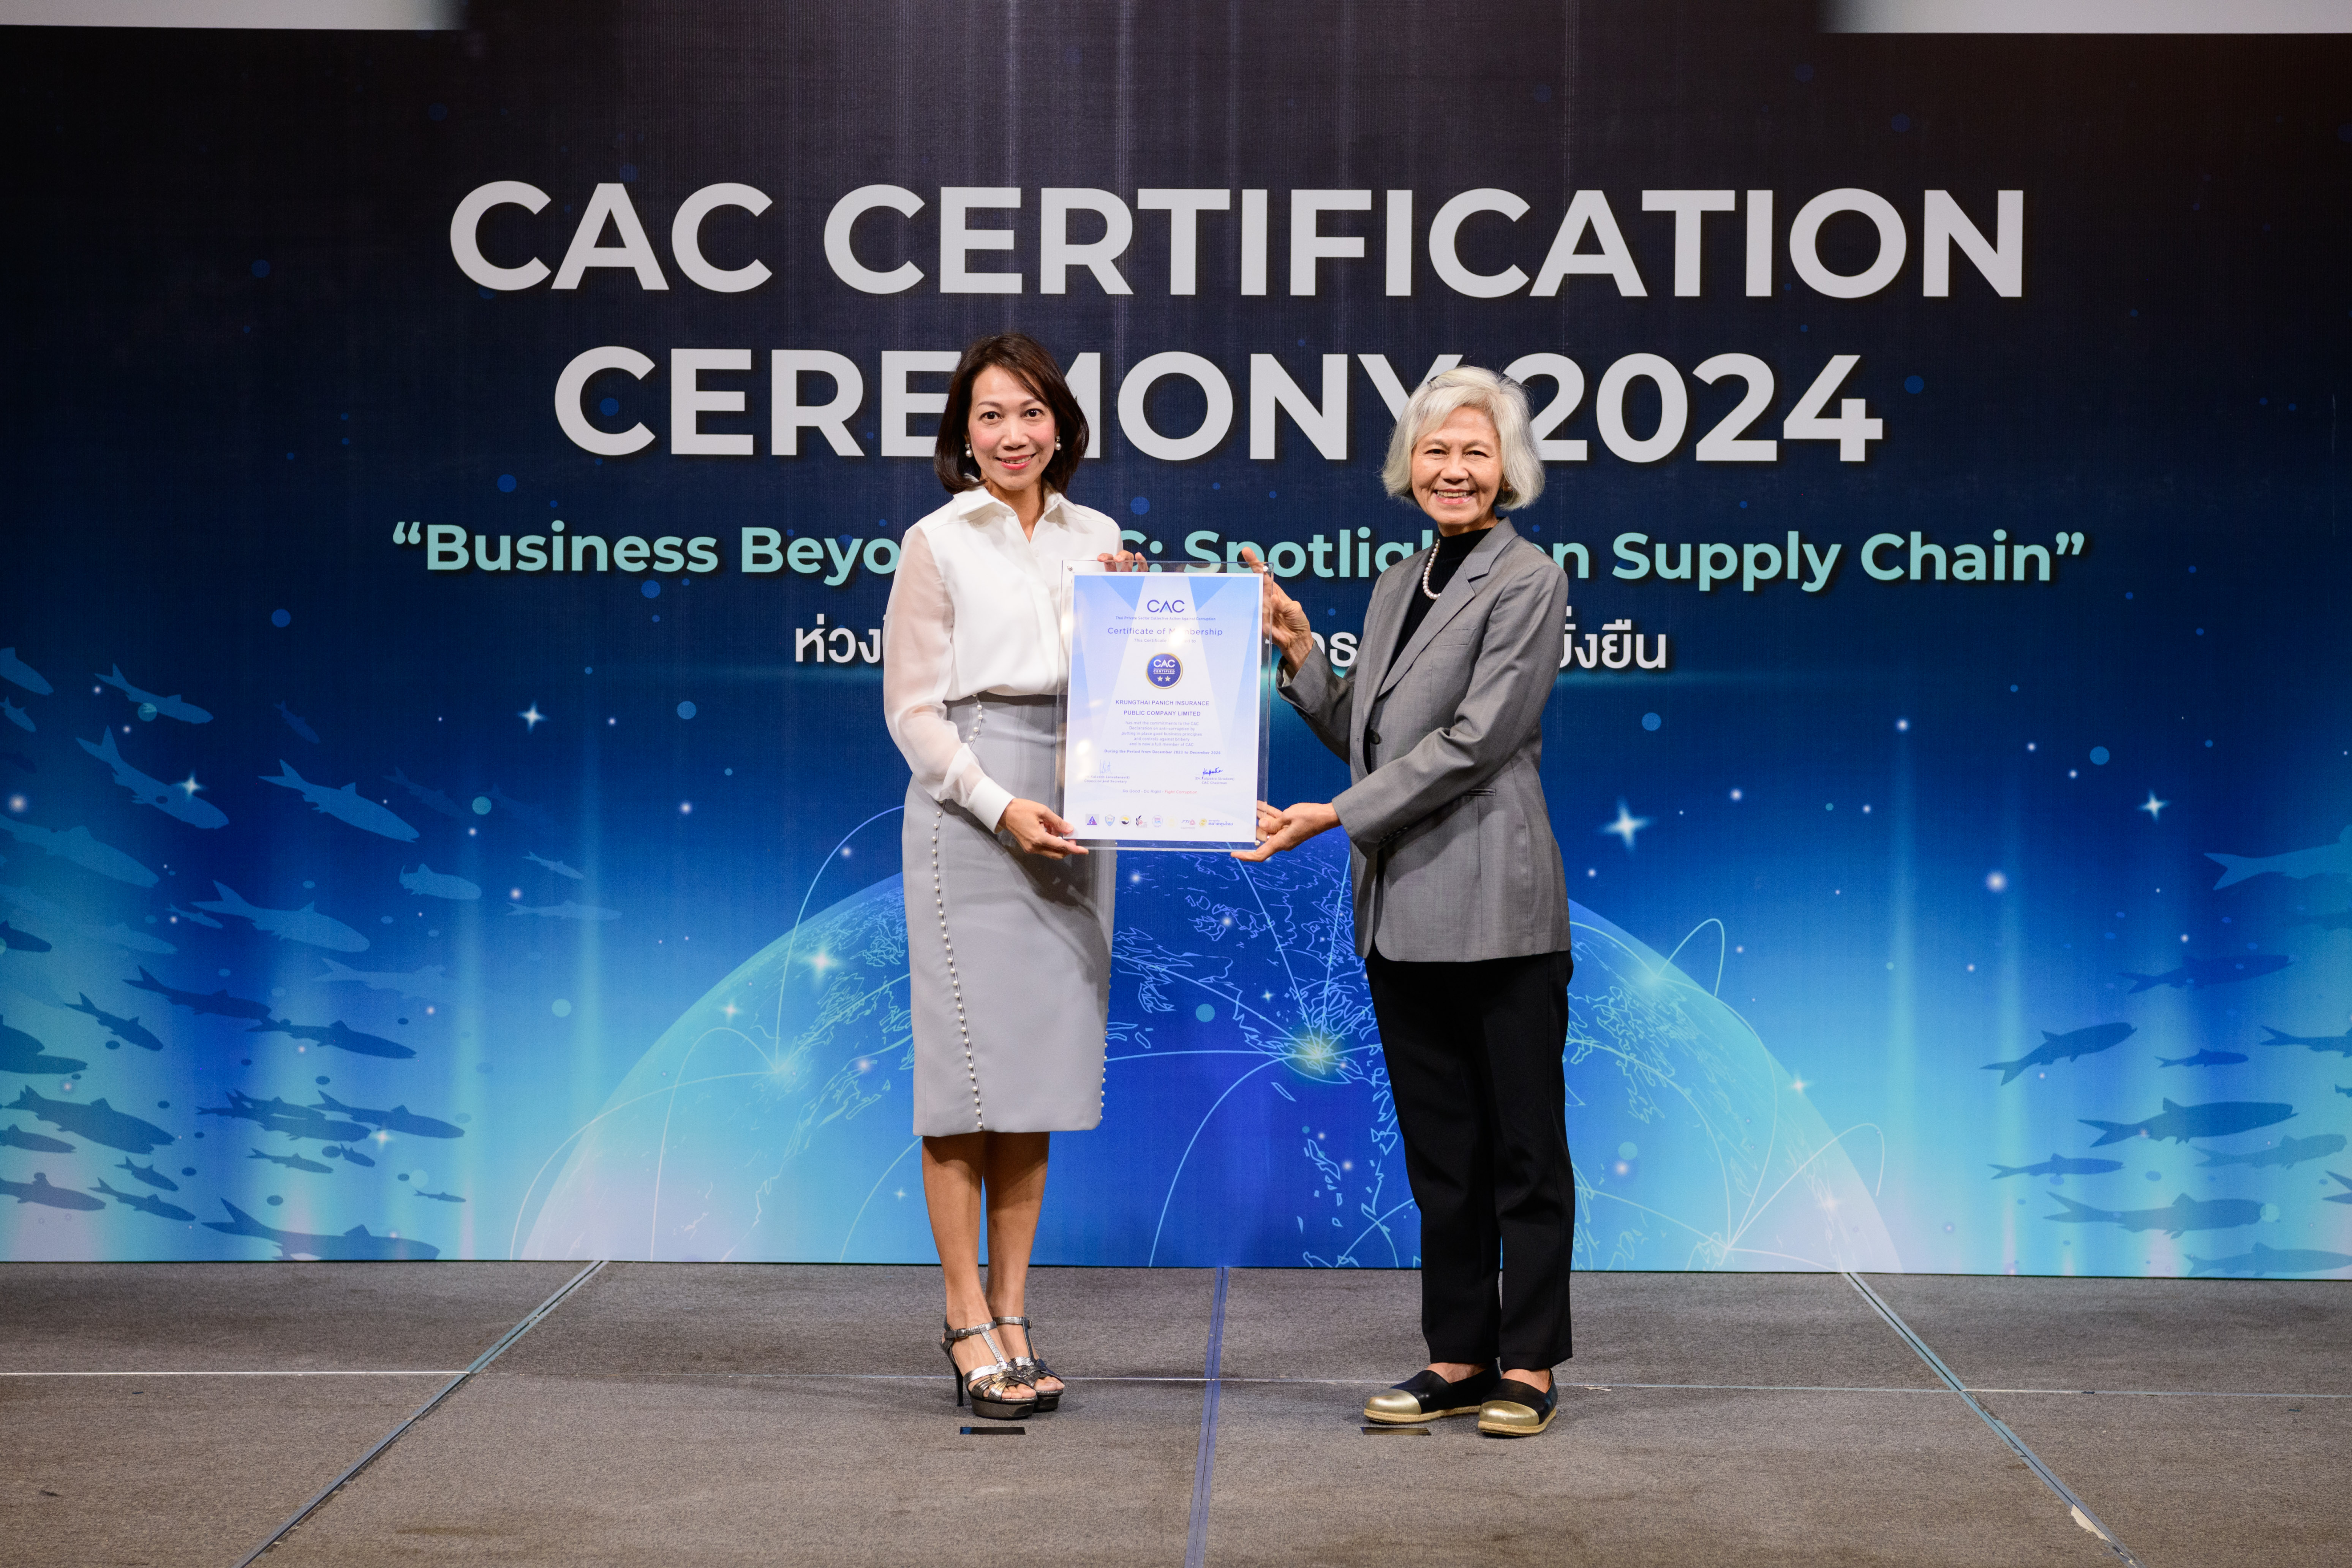 กรุงไทยพานิชประกันภัย (KPI) รับใบประกาศจาก CAC ขึ้นแท่นองค์กรธุรกิจโปร่งใส ตอกย้ำจุดยืนต่อต้านคอร์รัปชัน   